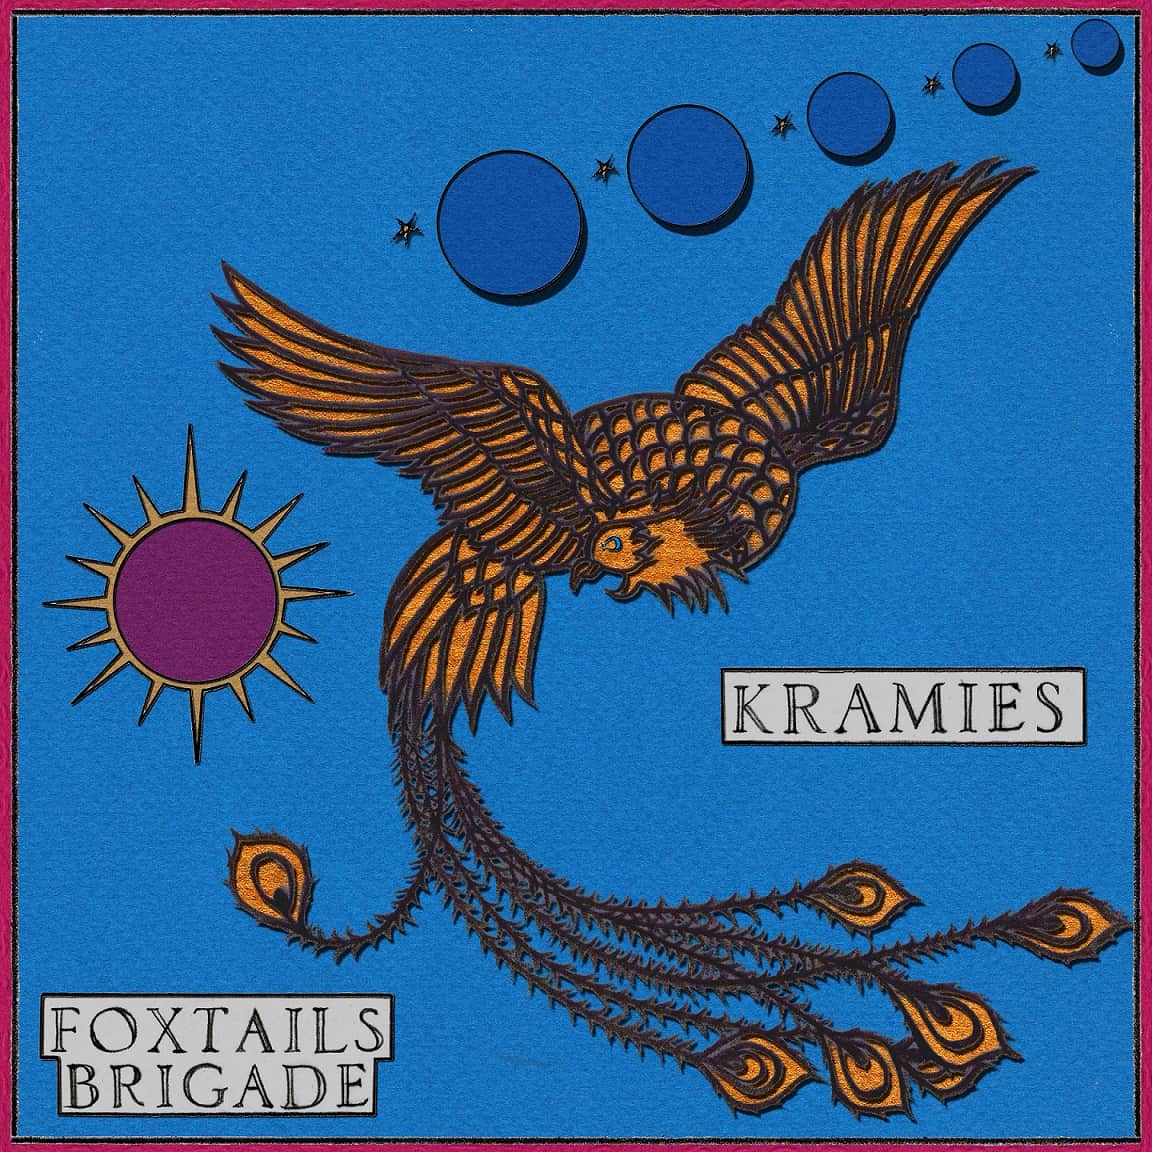 Foxtails Brigade - Kramies